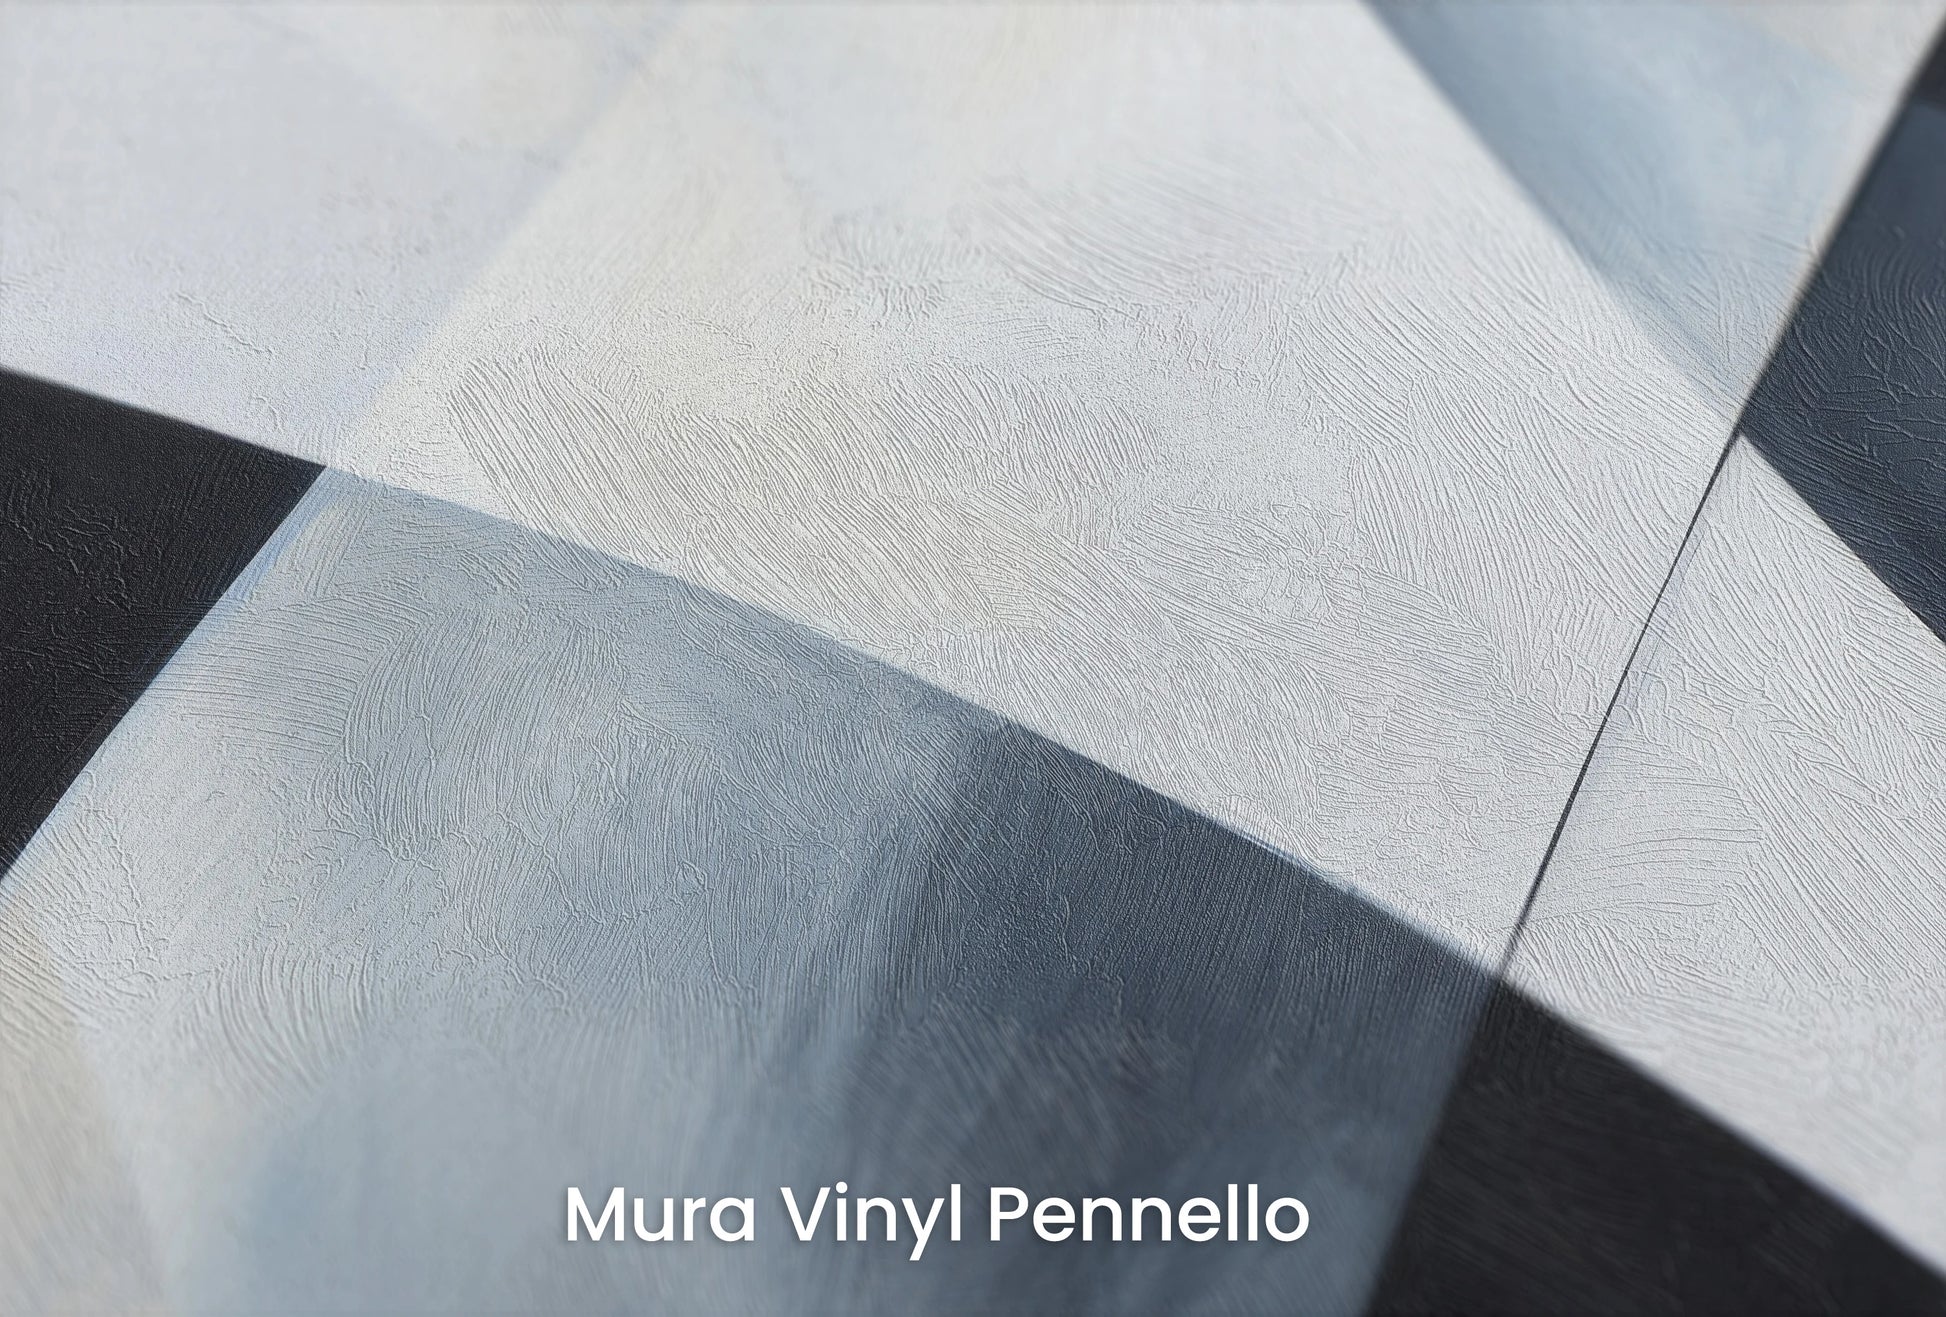 Zbliżenie na artystyczną fototapetę o nazwie Shades of Geometry na podłożu Mura Vinyl Pennello - faktura pociągnięć pędzla malarskiego.